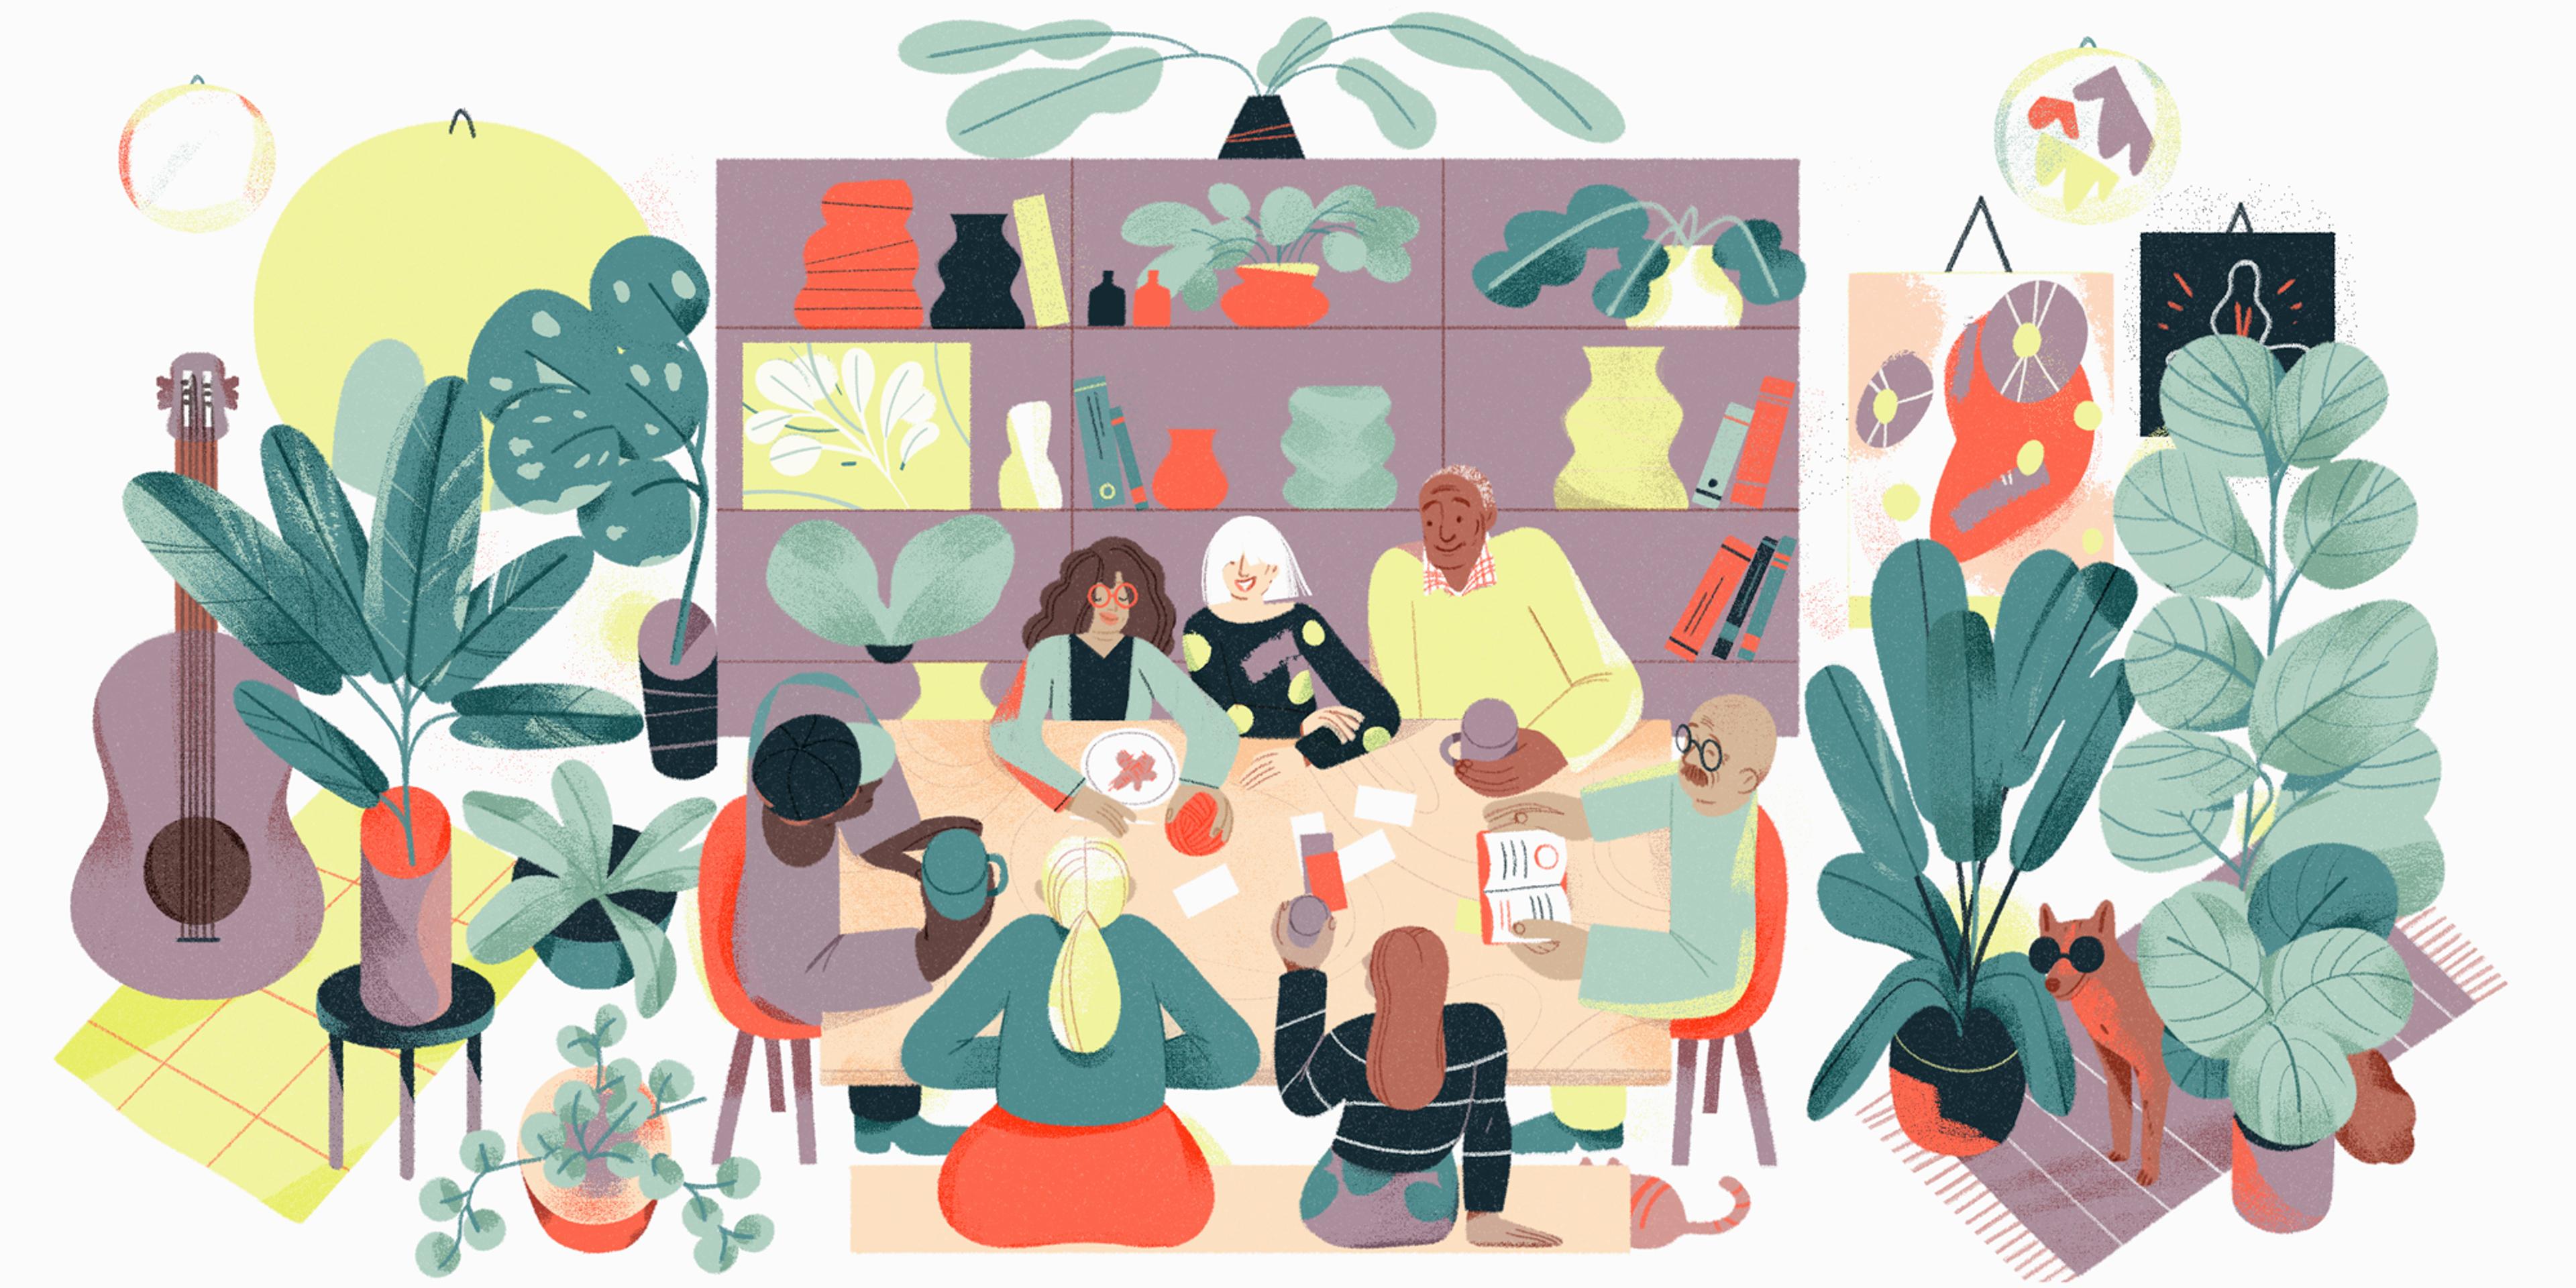 Suivi de groupe à L-Étagère : un groupe de personnes est assis autour d'une table dans la pièce chaleureuse de L-Étagère remplie de plantes, de livres et d'objets décoratifs